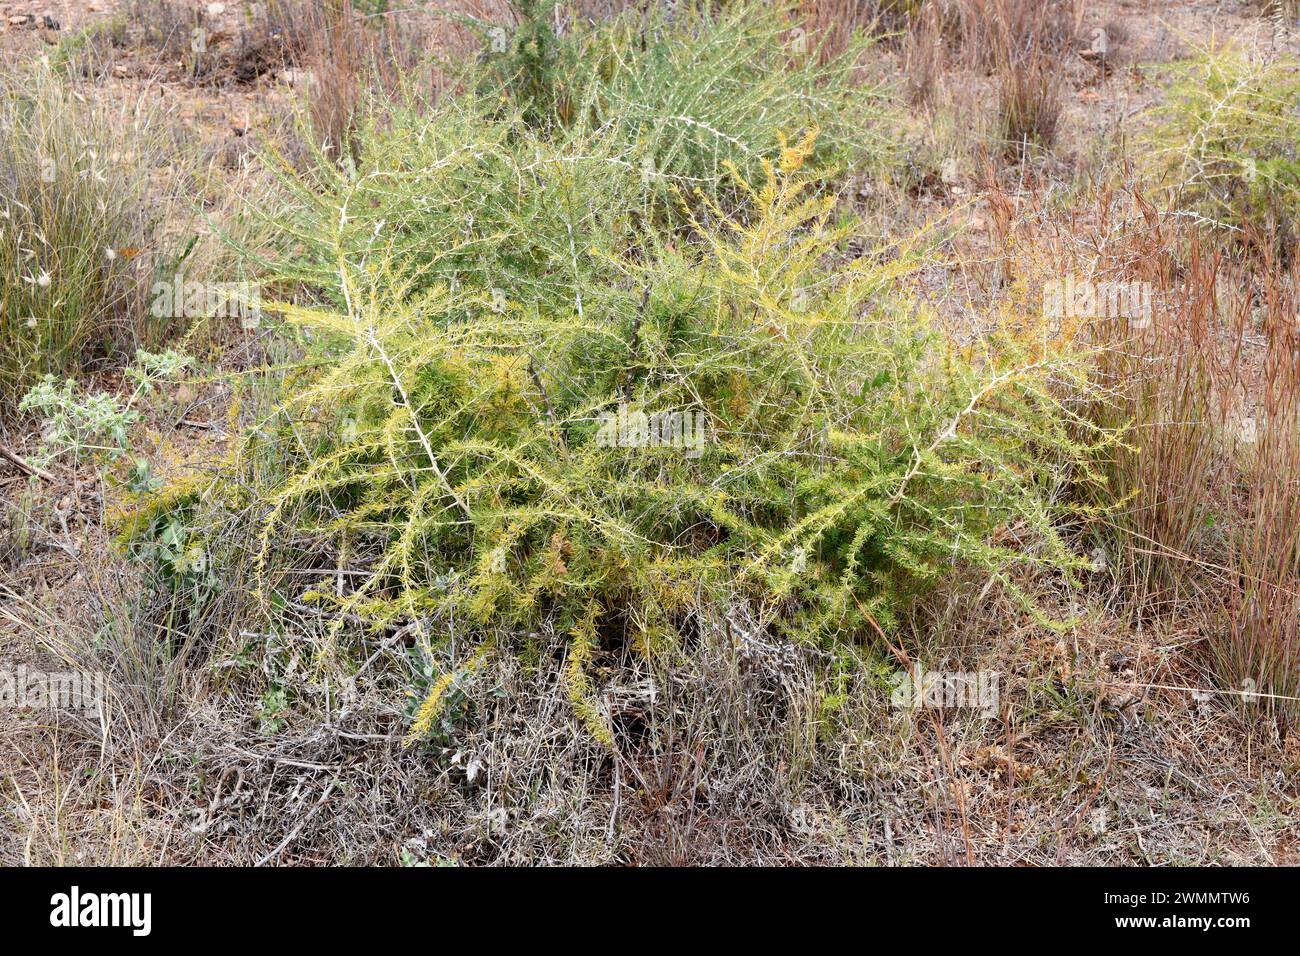 Esparraguera blanca (Asparagus albus) is a shrub native to western Mediterranean basin. This photo was taken in Cabo de Gata Natural Park, Almeria, An Stock Photo